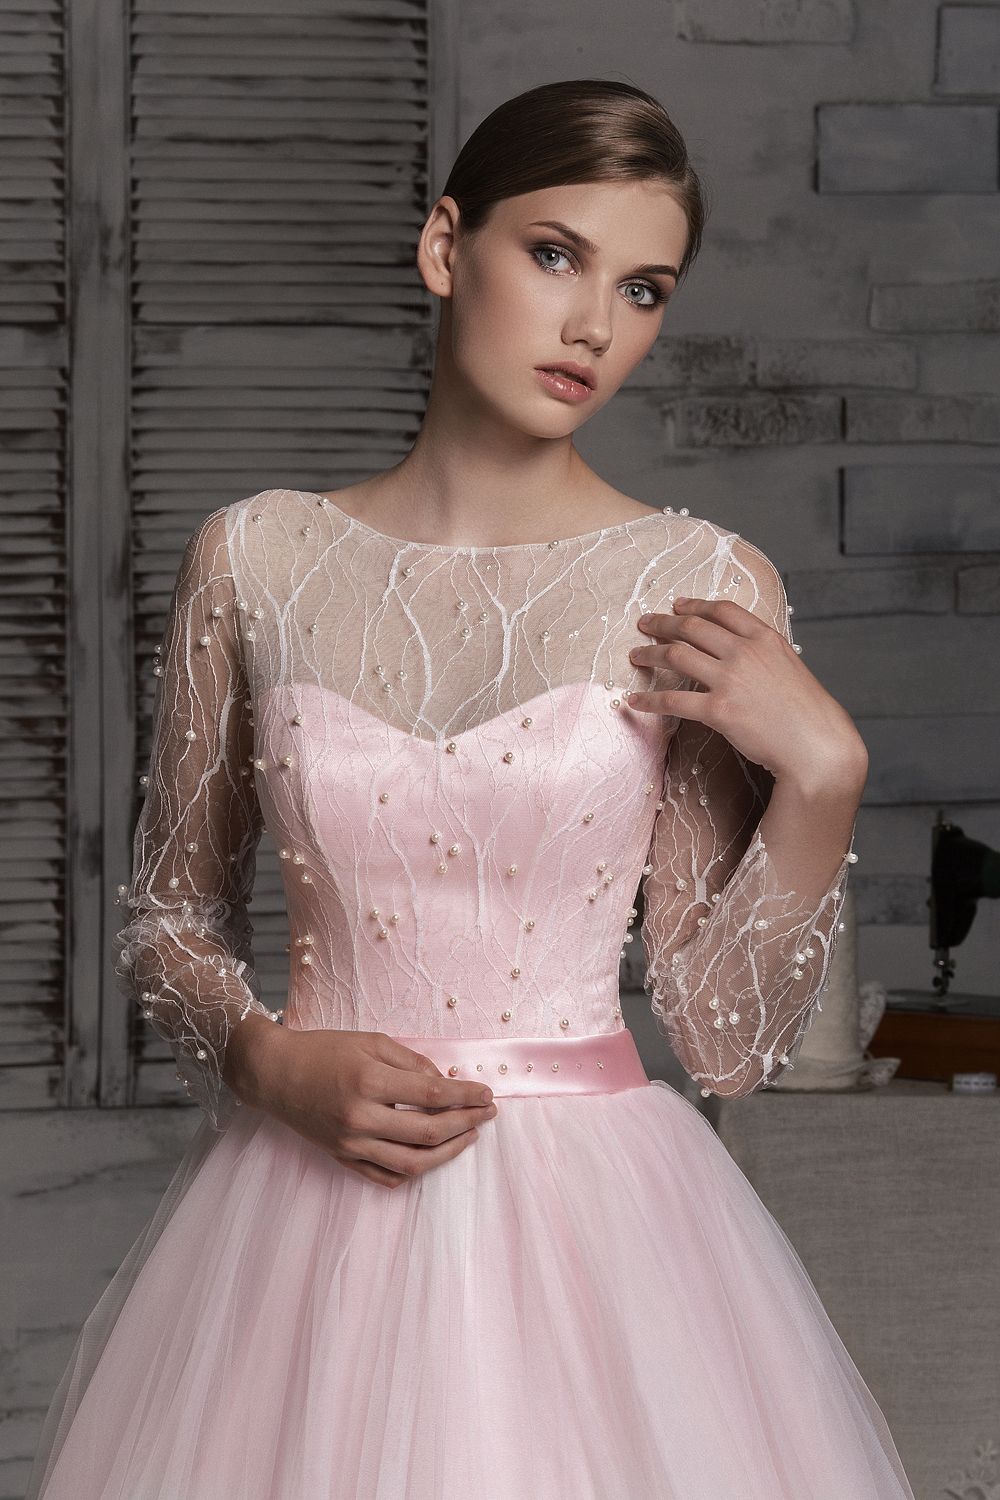 Розовое свадебное платье для романтичного образа невесты